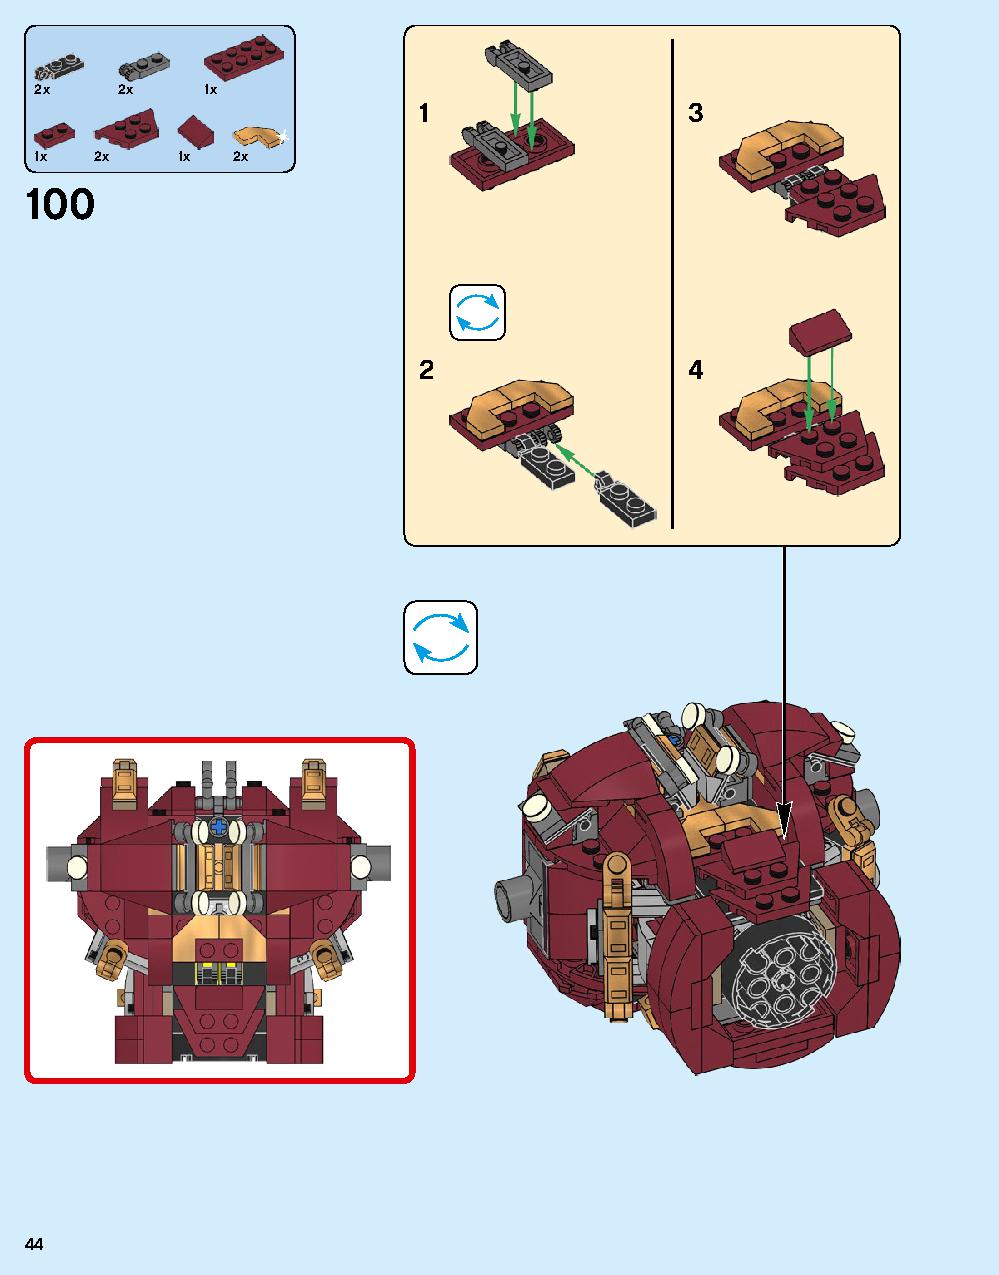 ハルクバスター：ウルトロン・エディション 76105 レゴの商品情報 レゴの説明書・組立方法 44 page